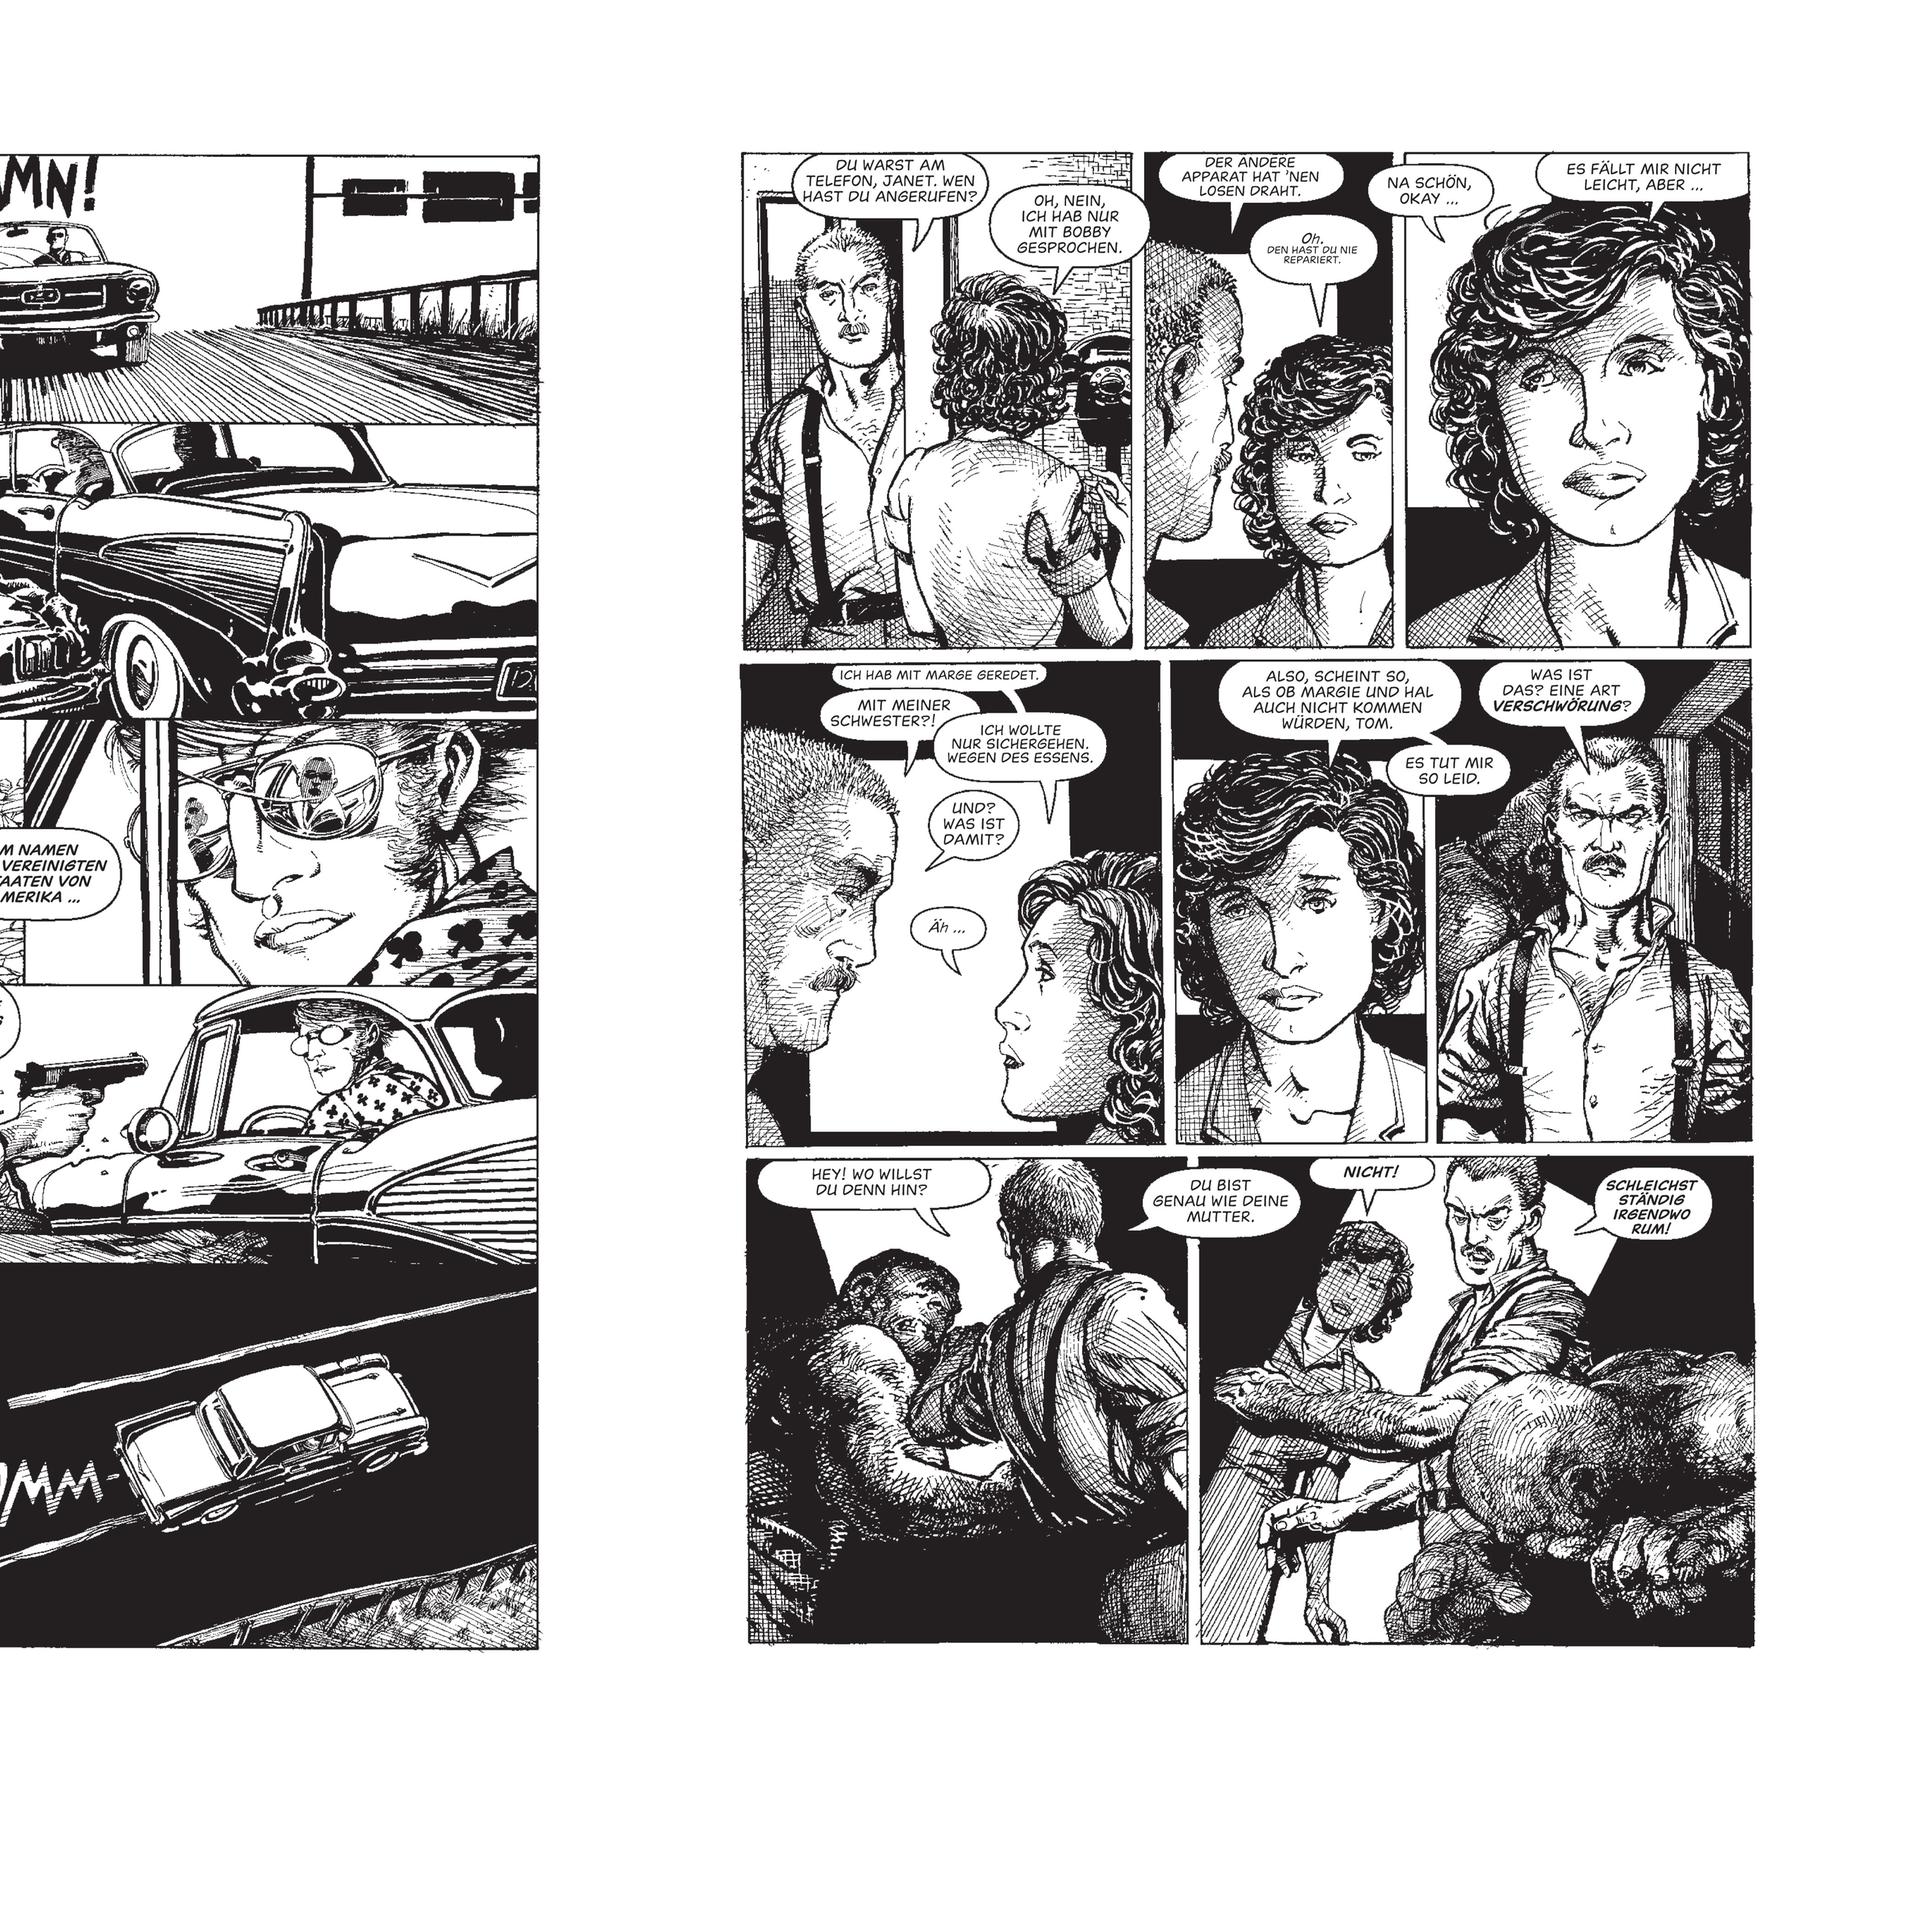 Abgebildet sind zwei Seiten aus dem Schwarzweiß-Comic "Monster" des US-Autors und Zeichners Barry Windsor-Smith. 